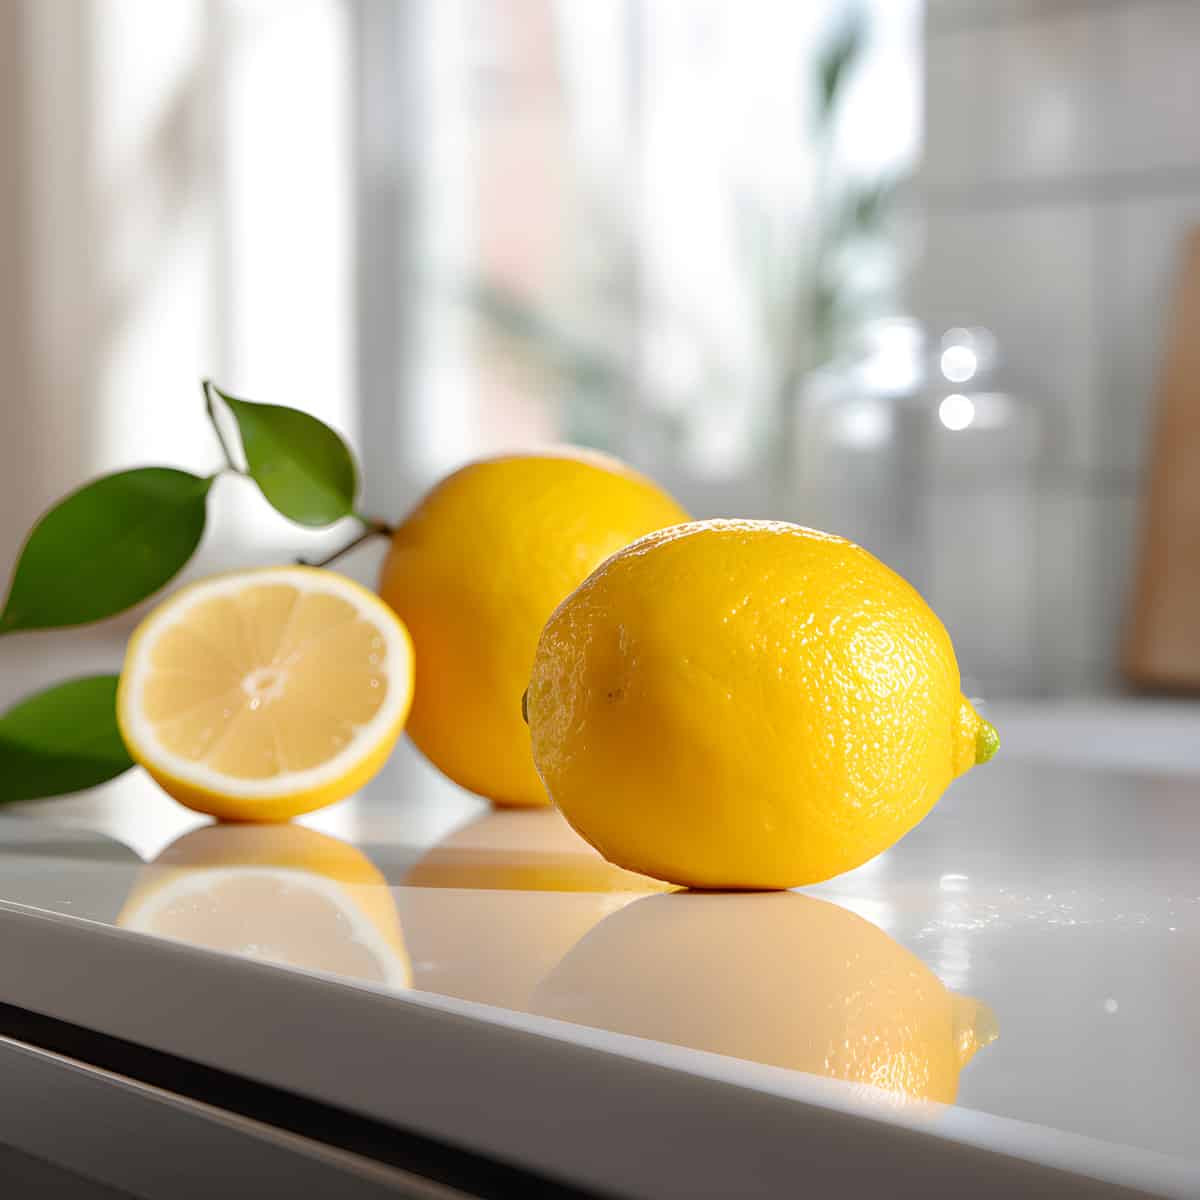 Lemon on a kitchen counter